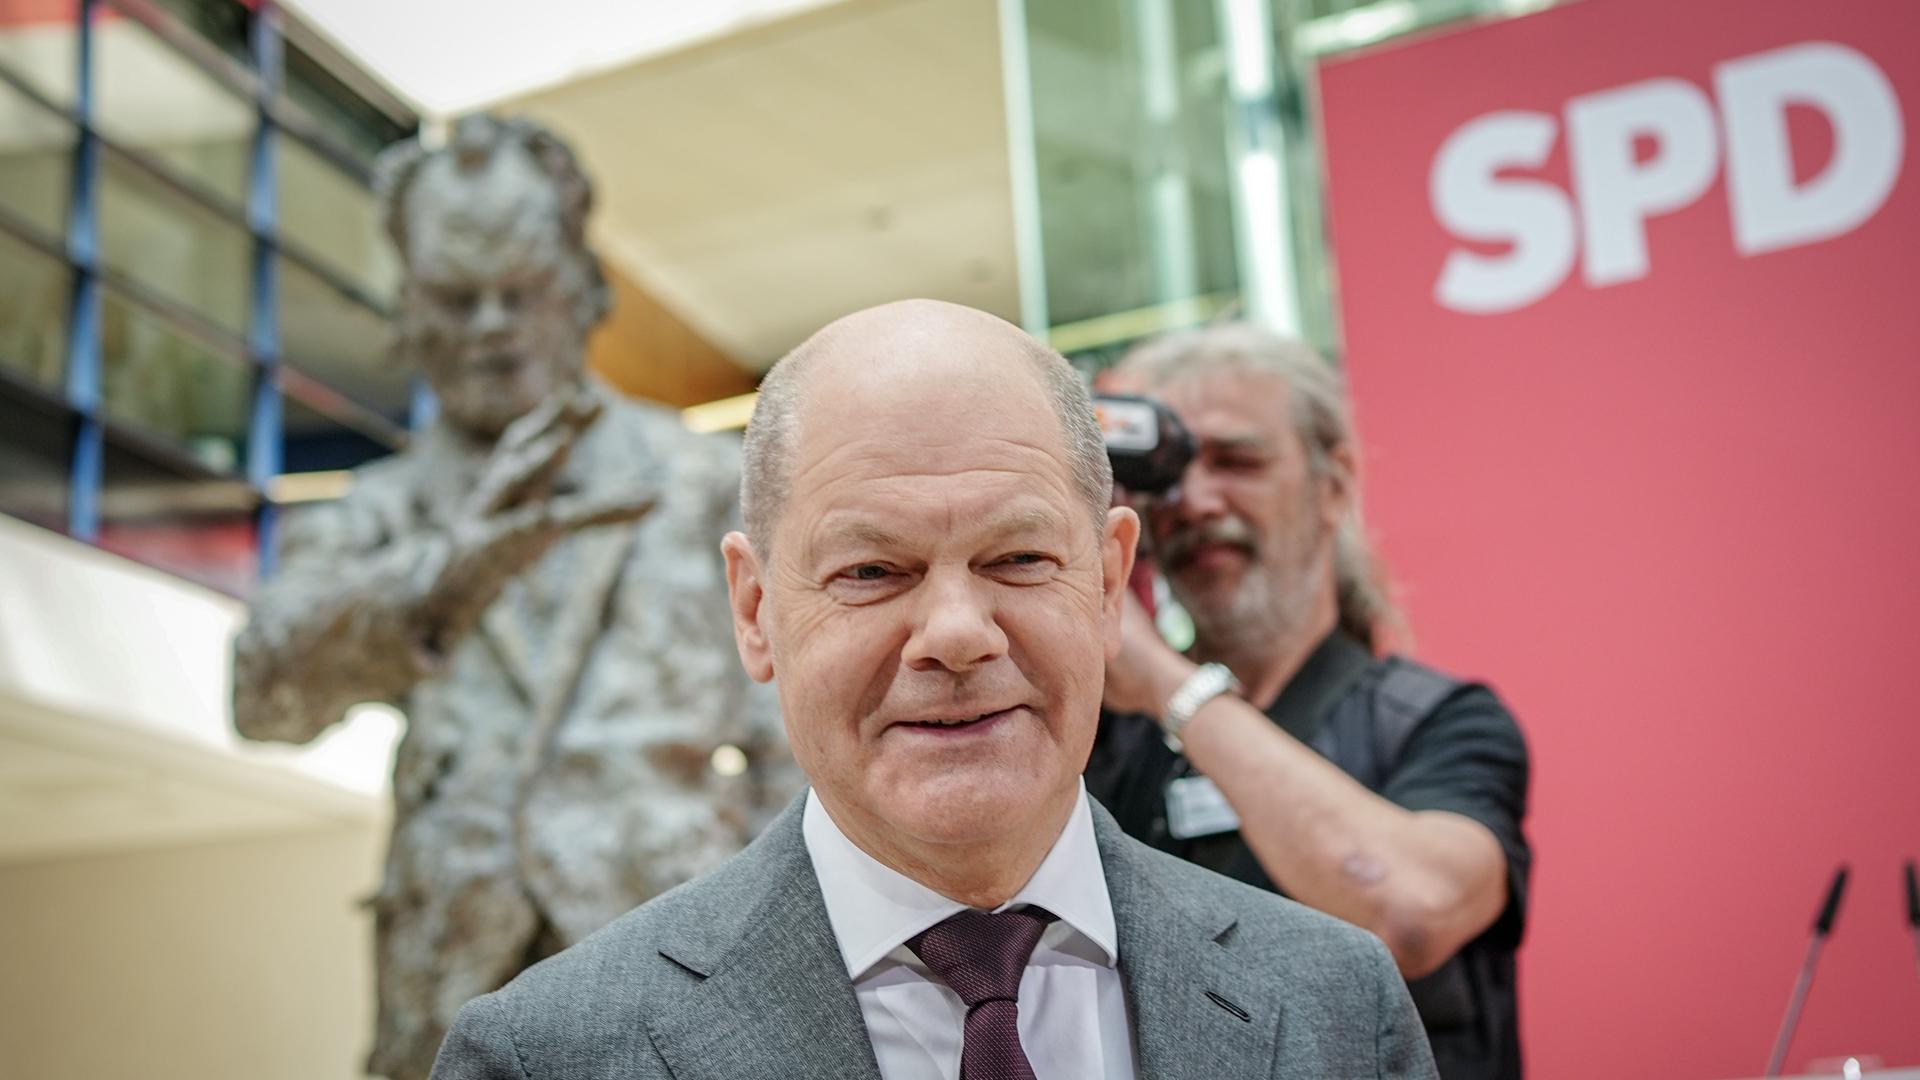 Bundeskanzler Olaf Scholz (SPD) nimmt an der Feier der SPD für ihr 160-jähriges Bestehen teil. Im Hintergrund  eine Büste von Willy Brand und der Schriftzug "SPD".